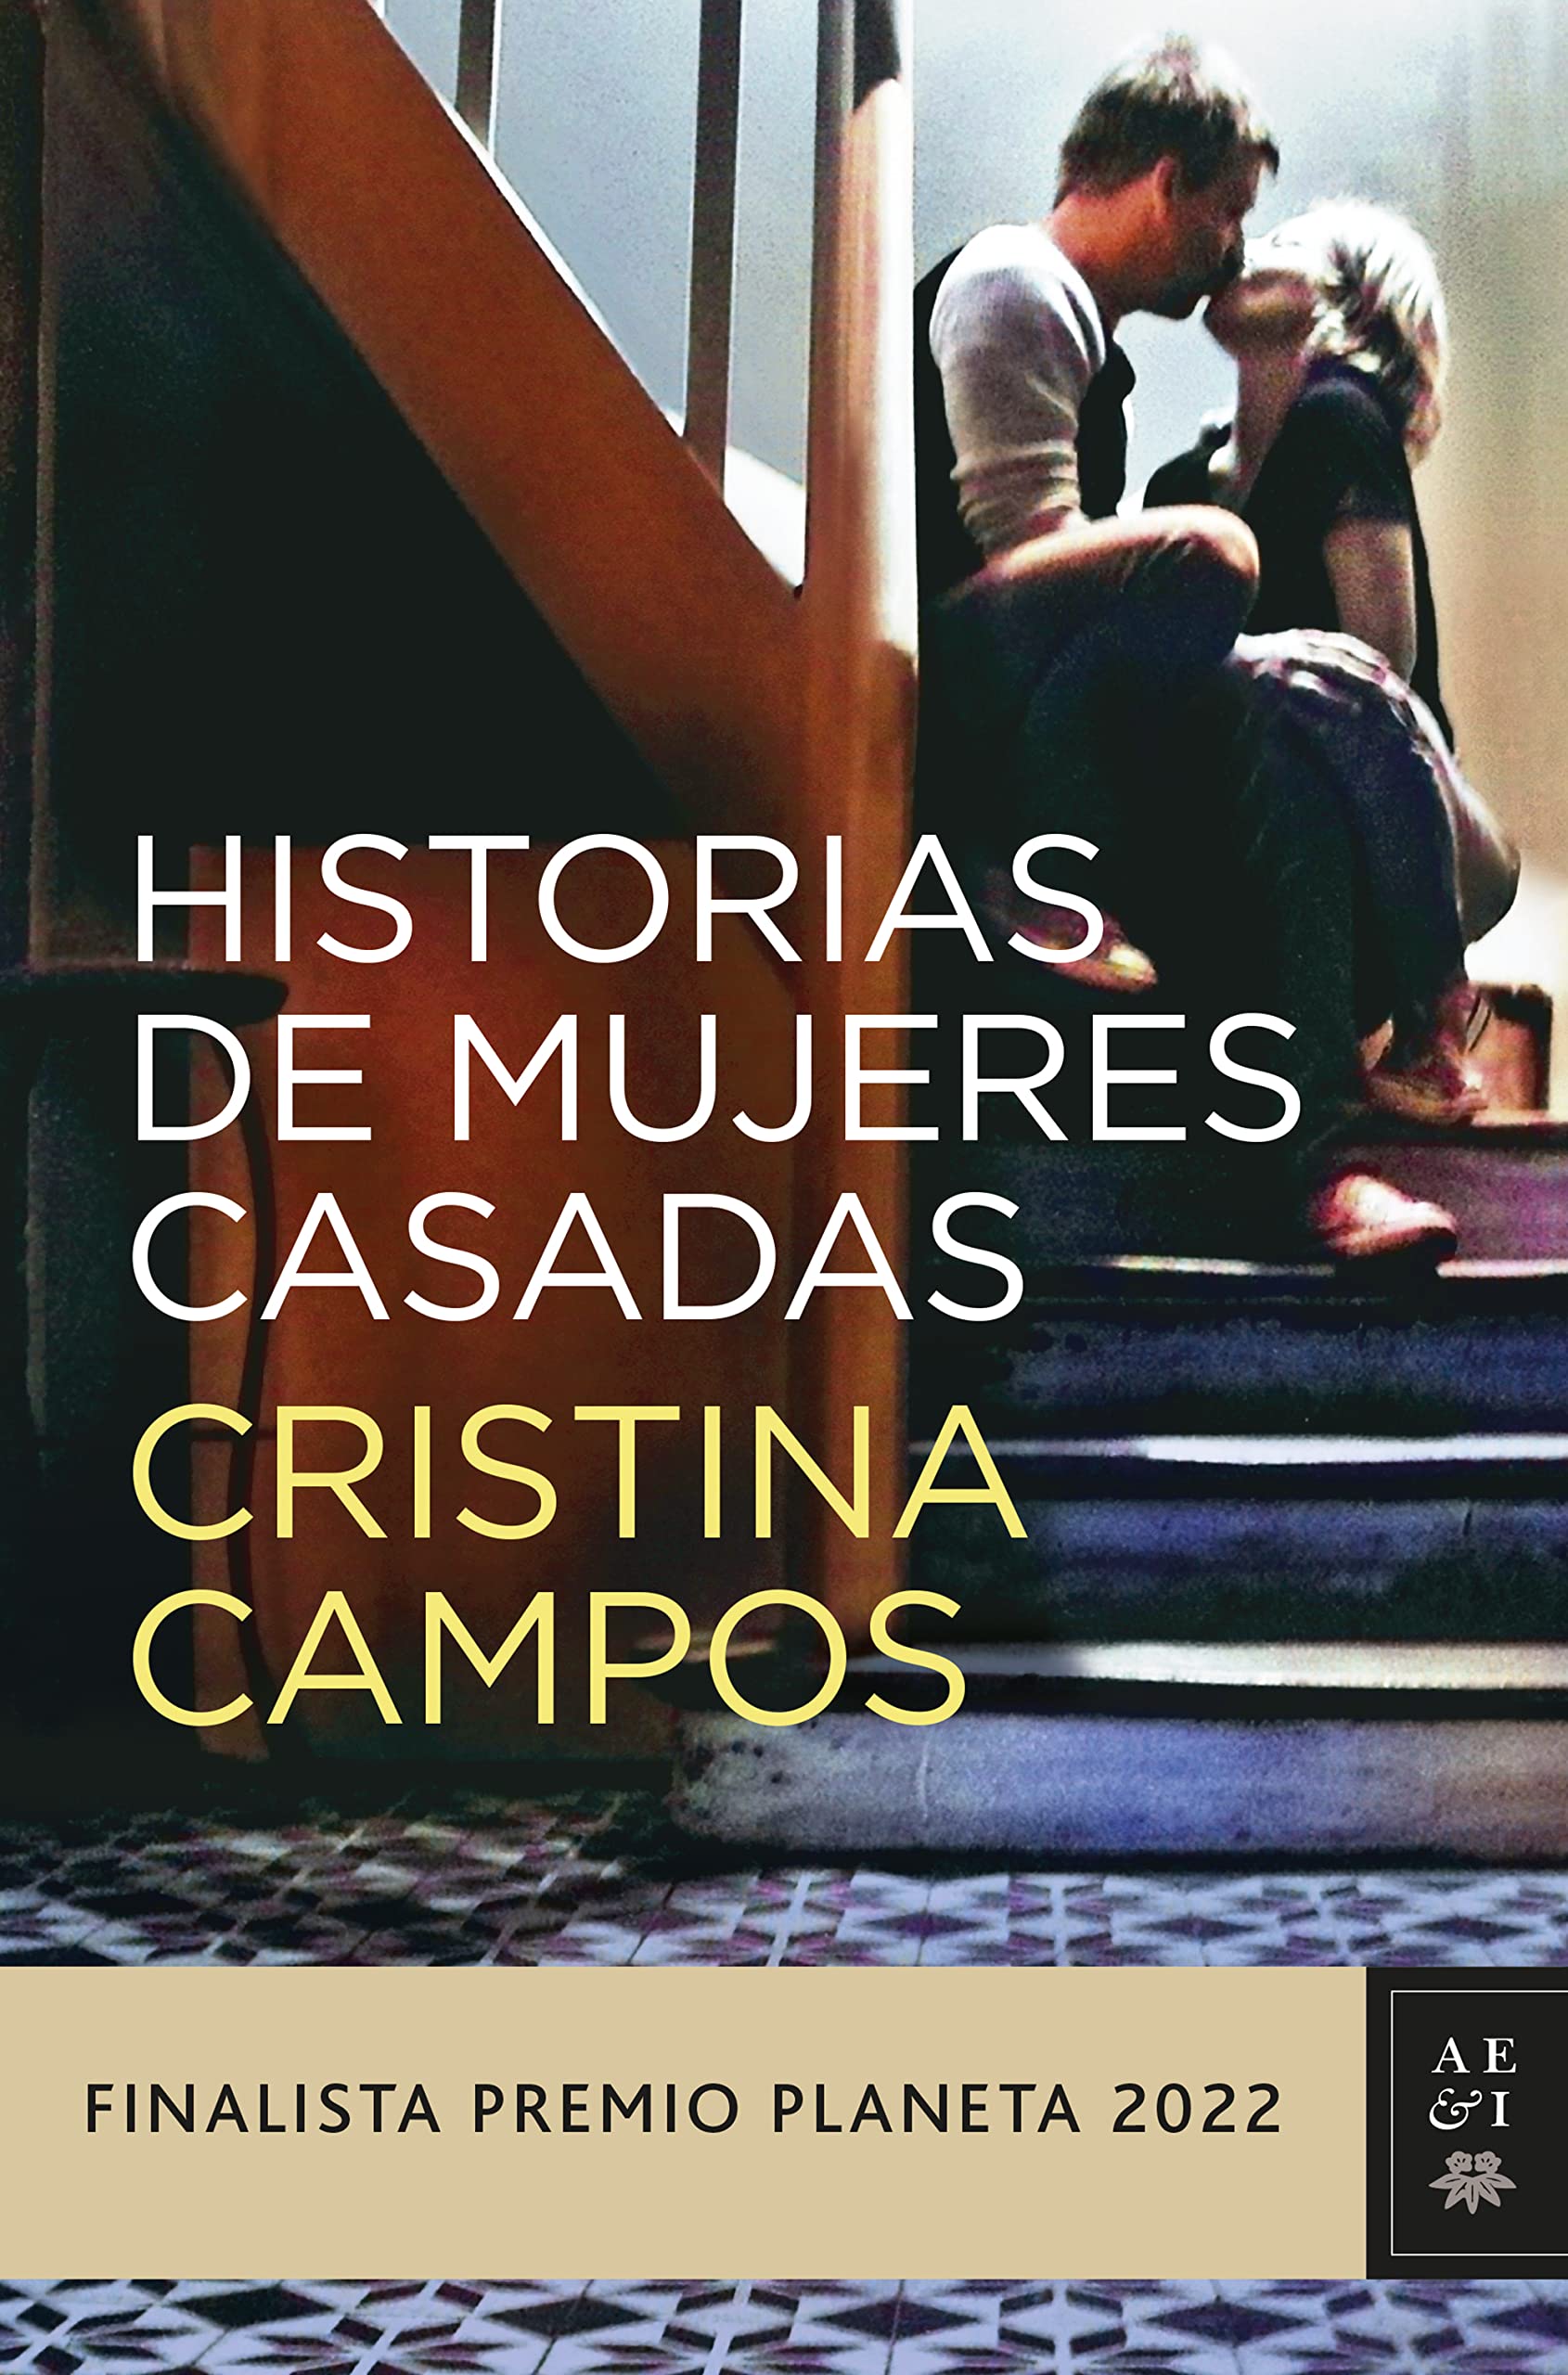 Cristina Campos Foto imagen